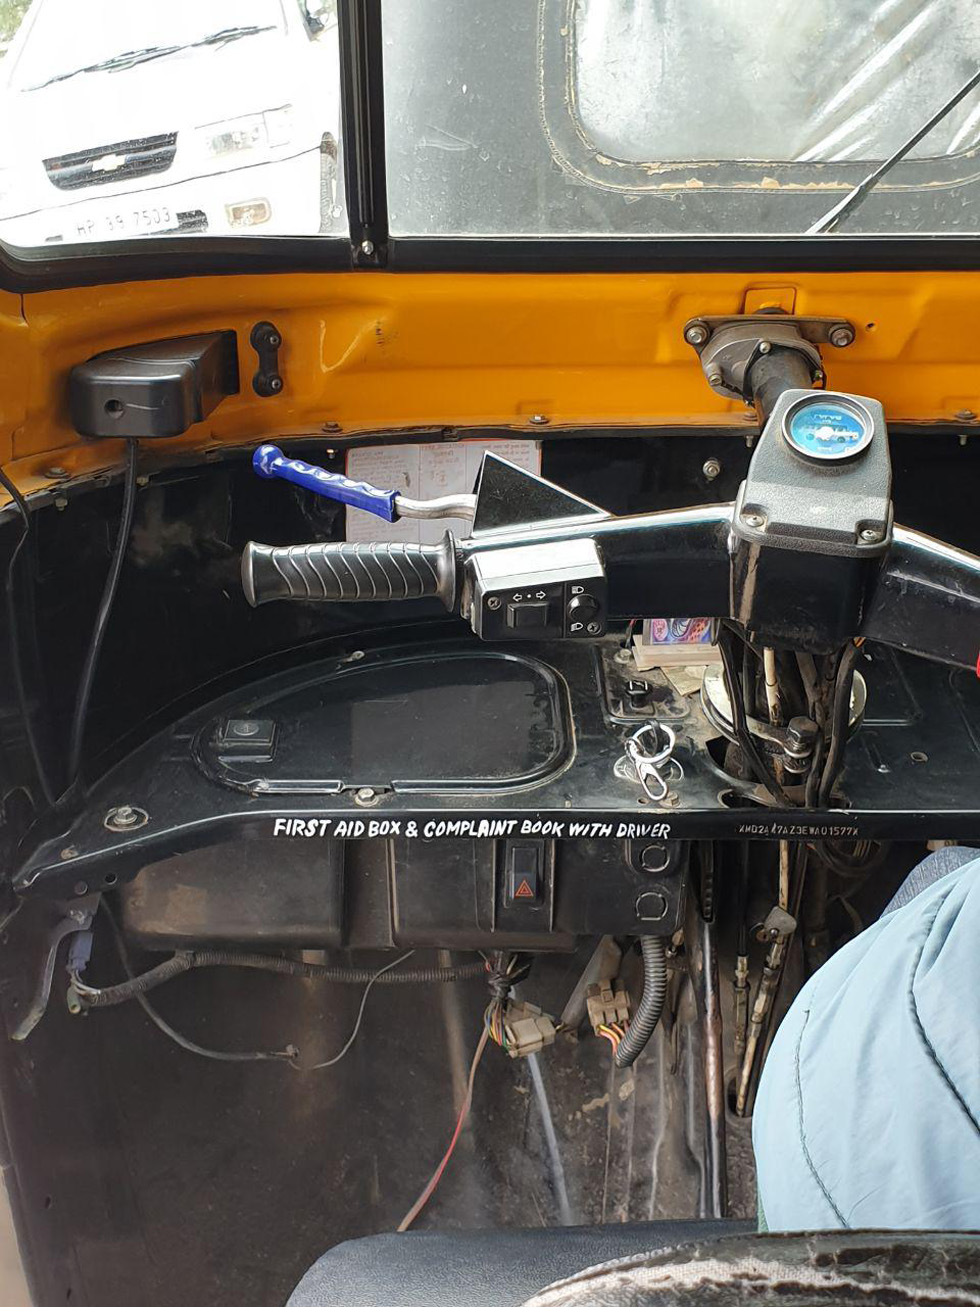 Индийская рикша. "Жалобная книга и аптечка у водителя". Фото: Ноа Лави